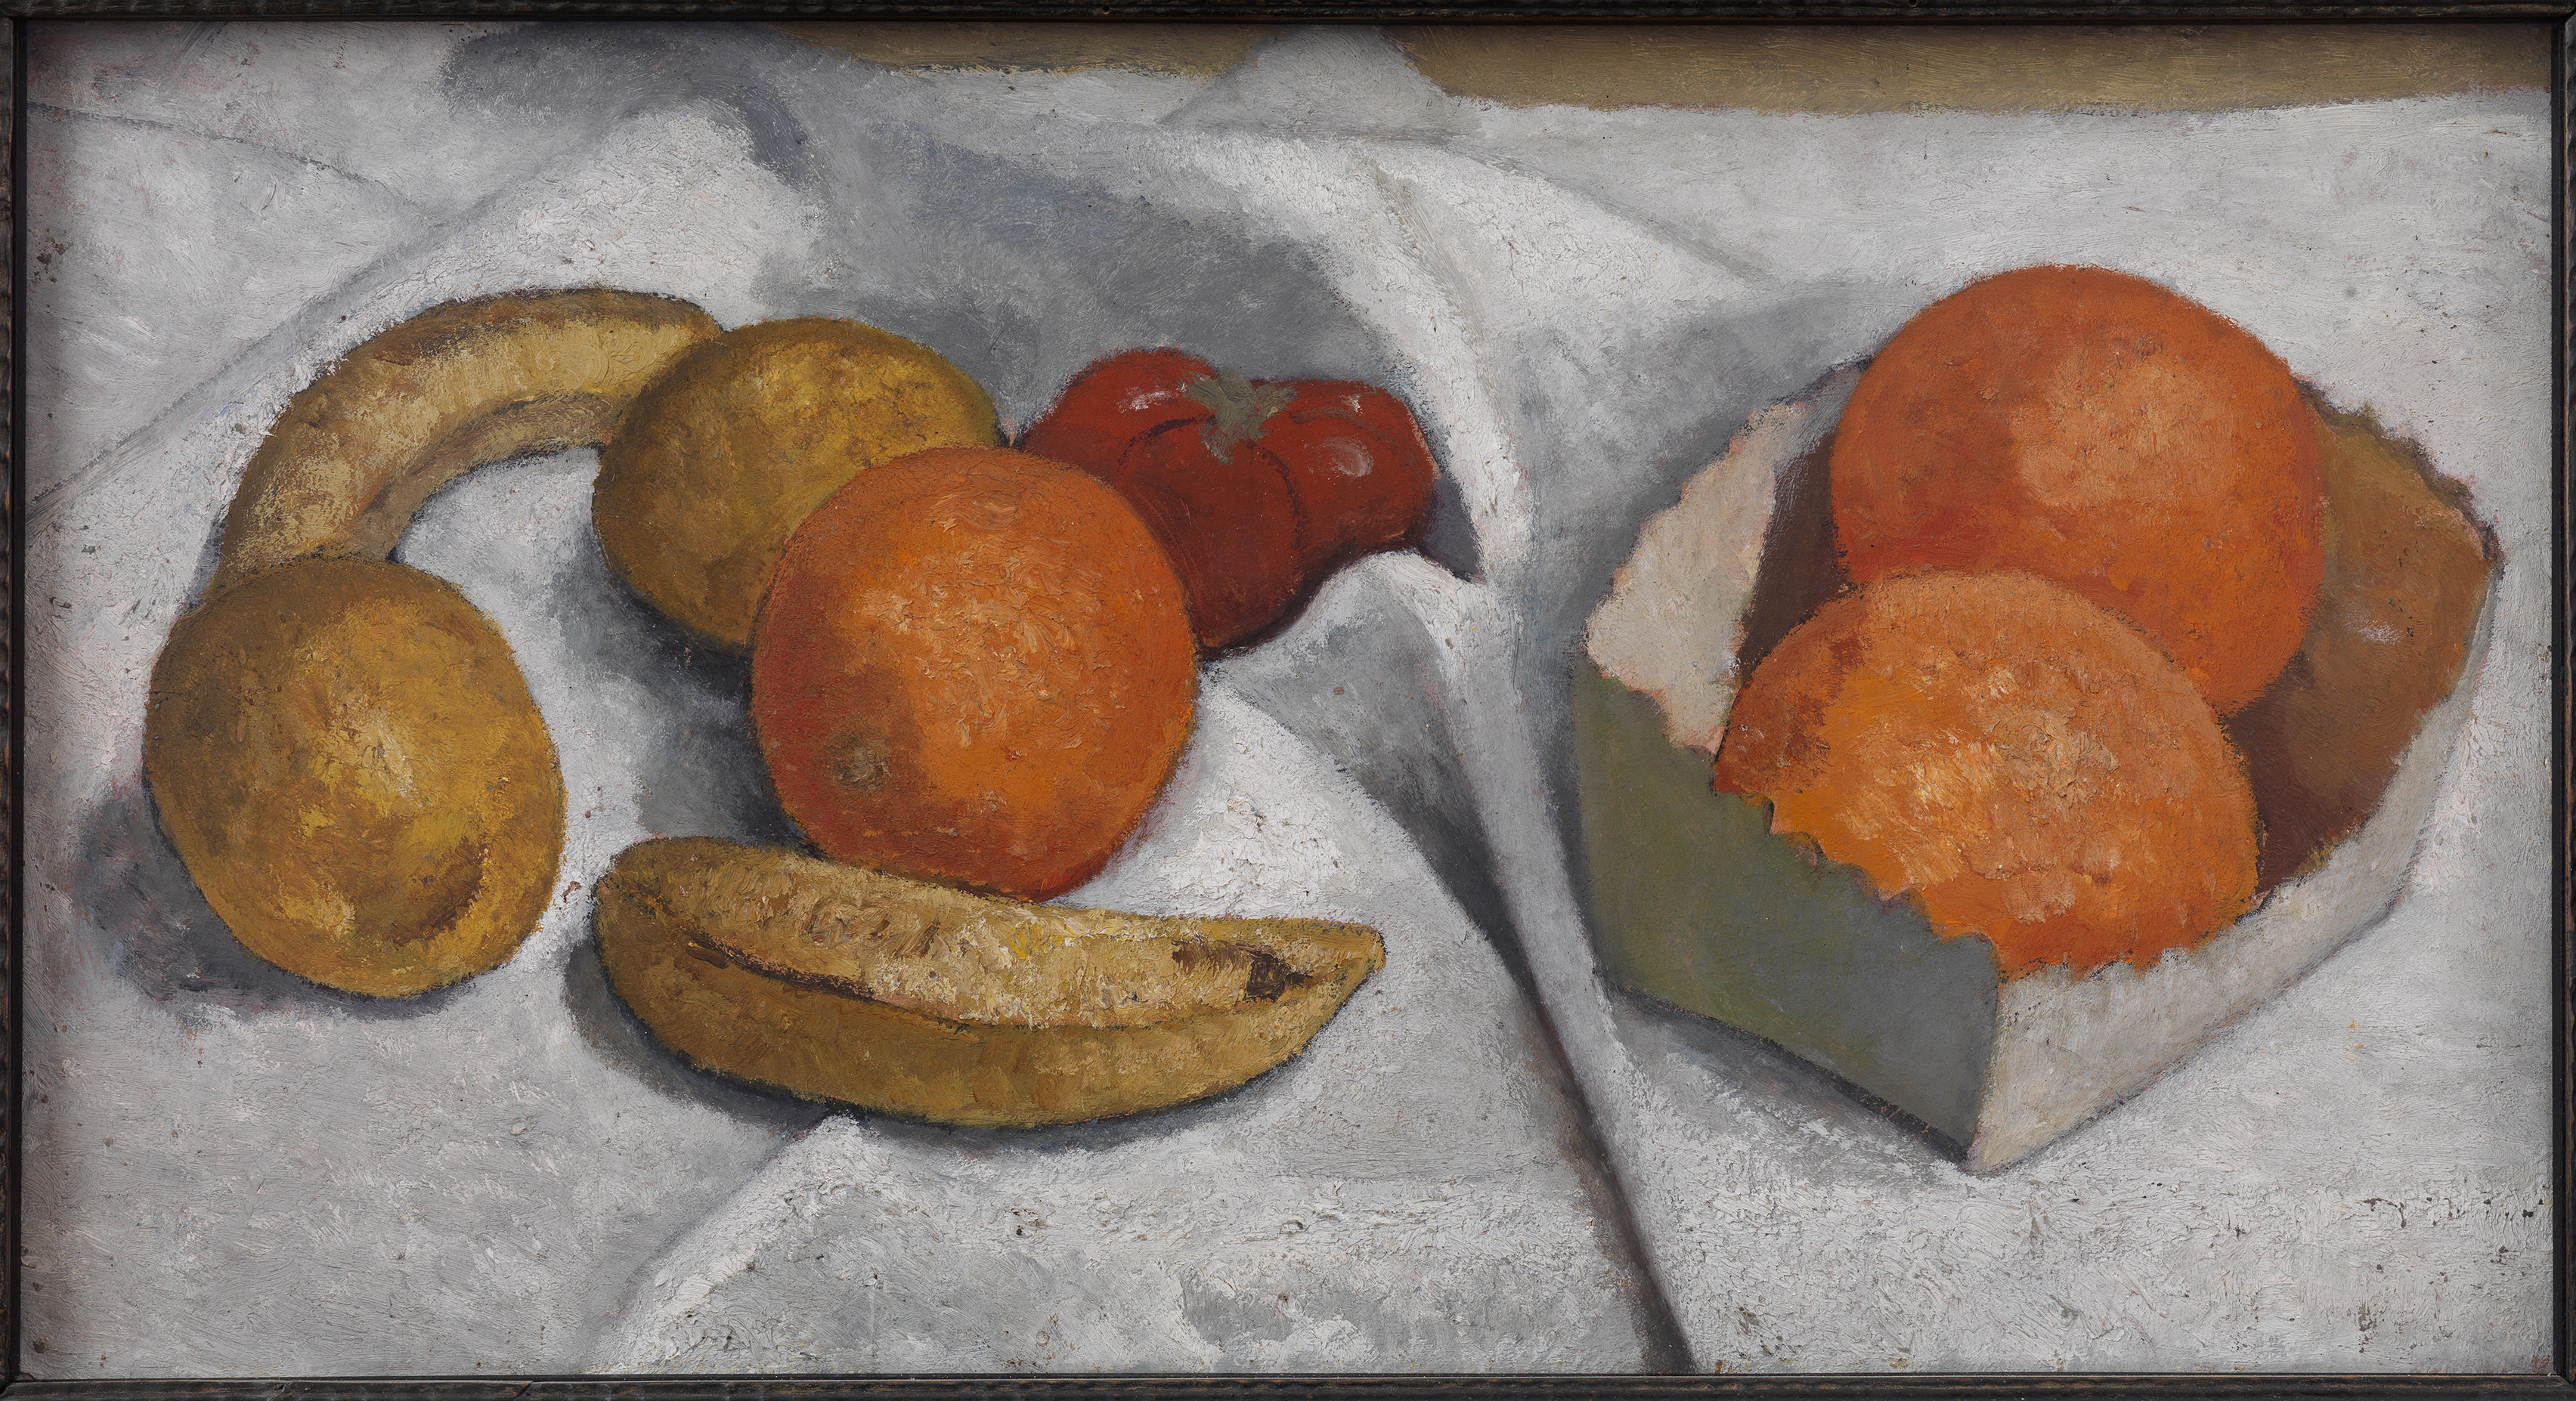 الطبيعة الصامتة مع البرتقال والموز والليمون والطماطم by Paula Modersohn-Becker - 1906 - 28.2 x 52.2 سم 